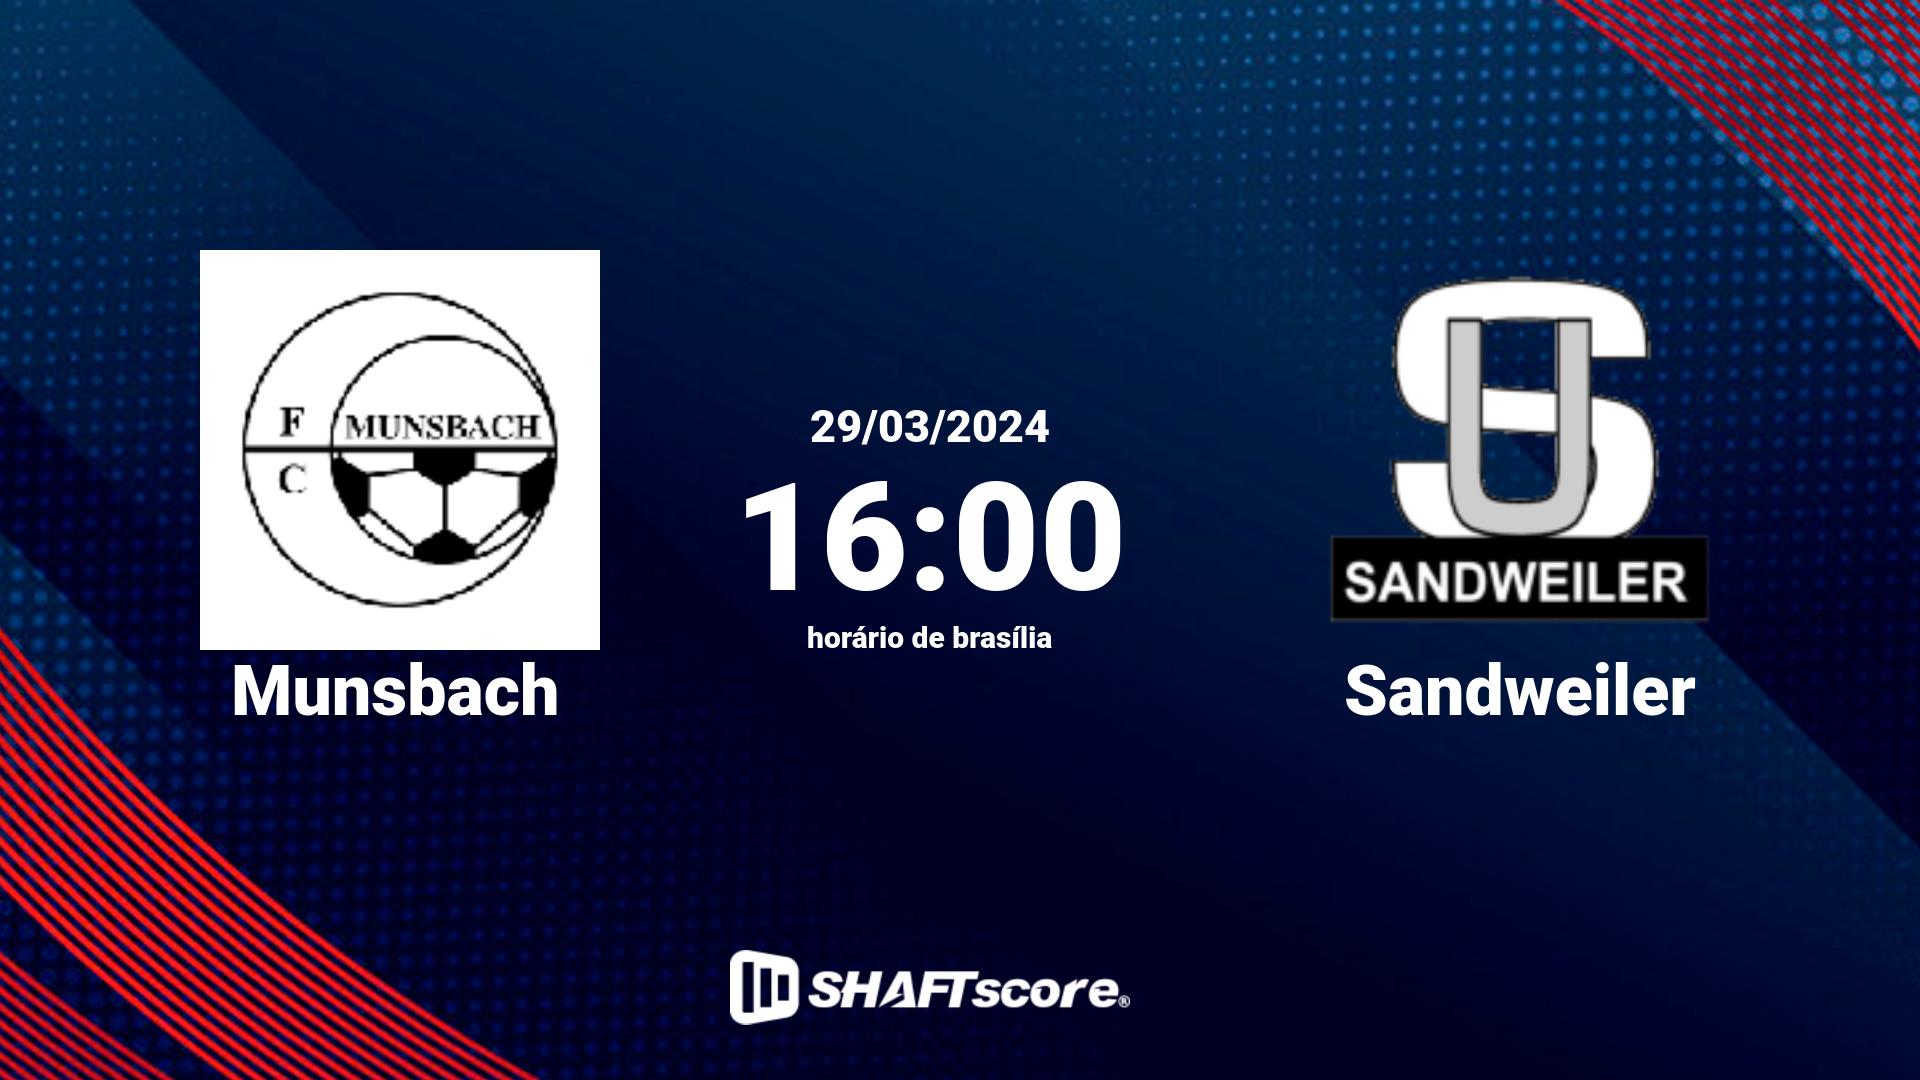 Estatísticas do jogo Munsbach vs Sandweiler 29.03 16:00